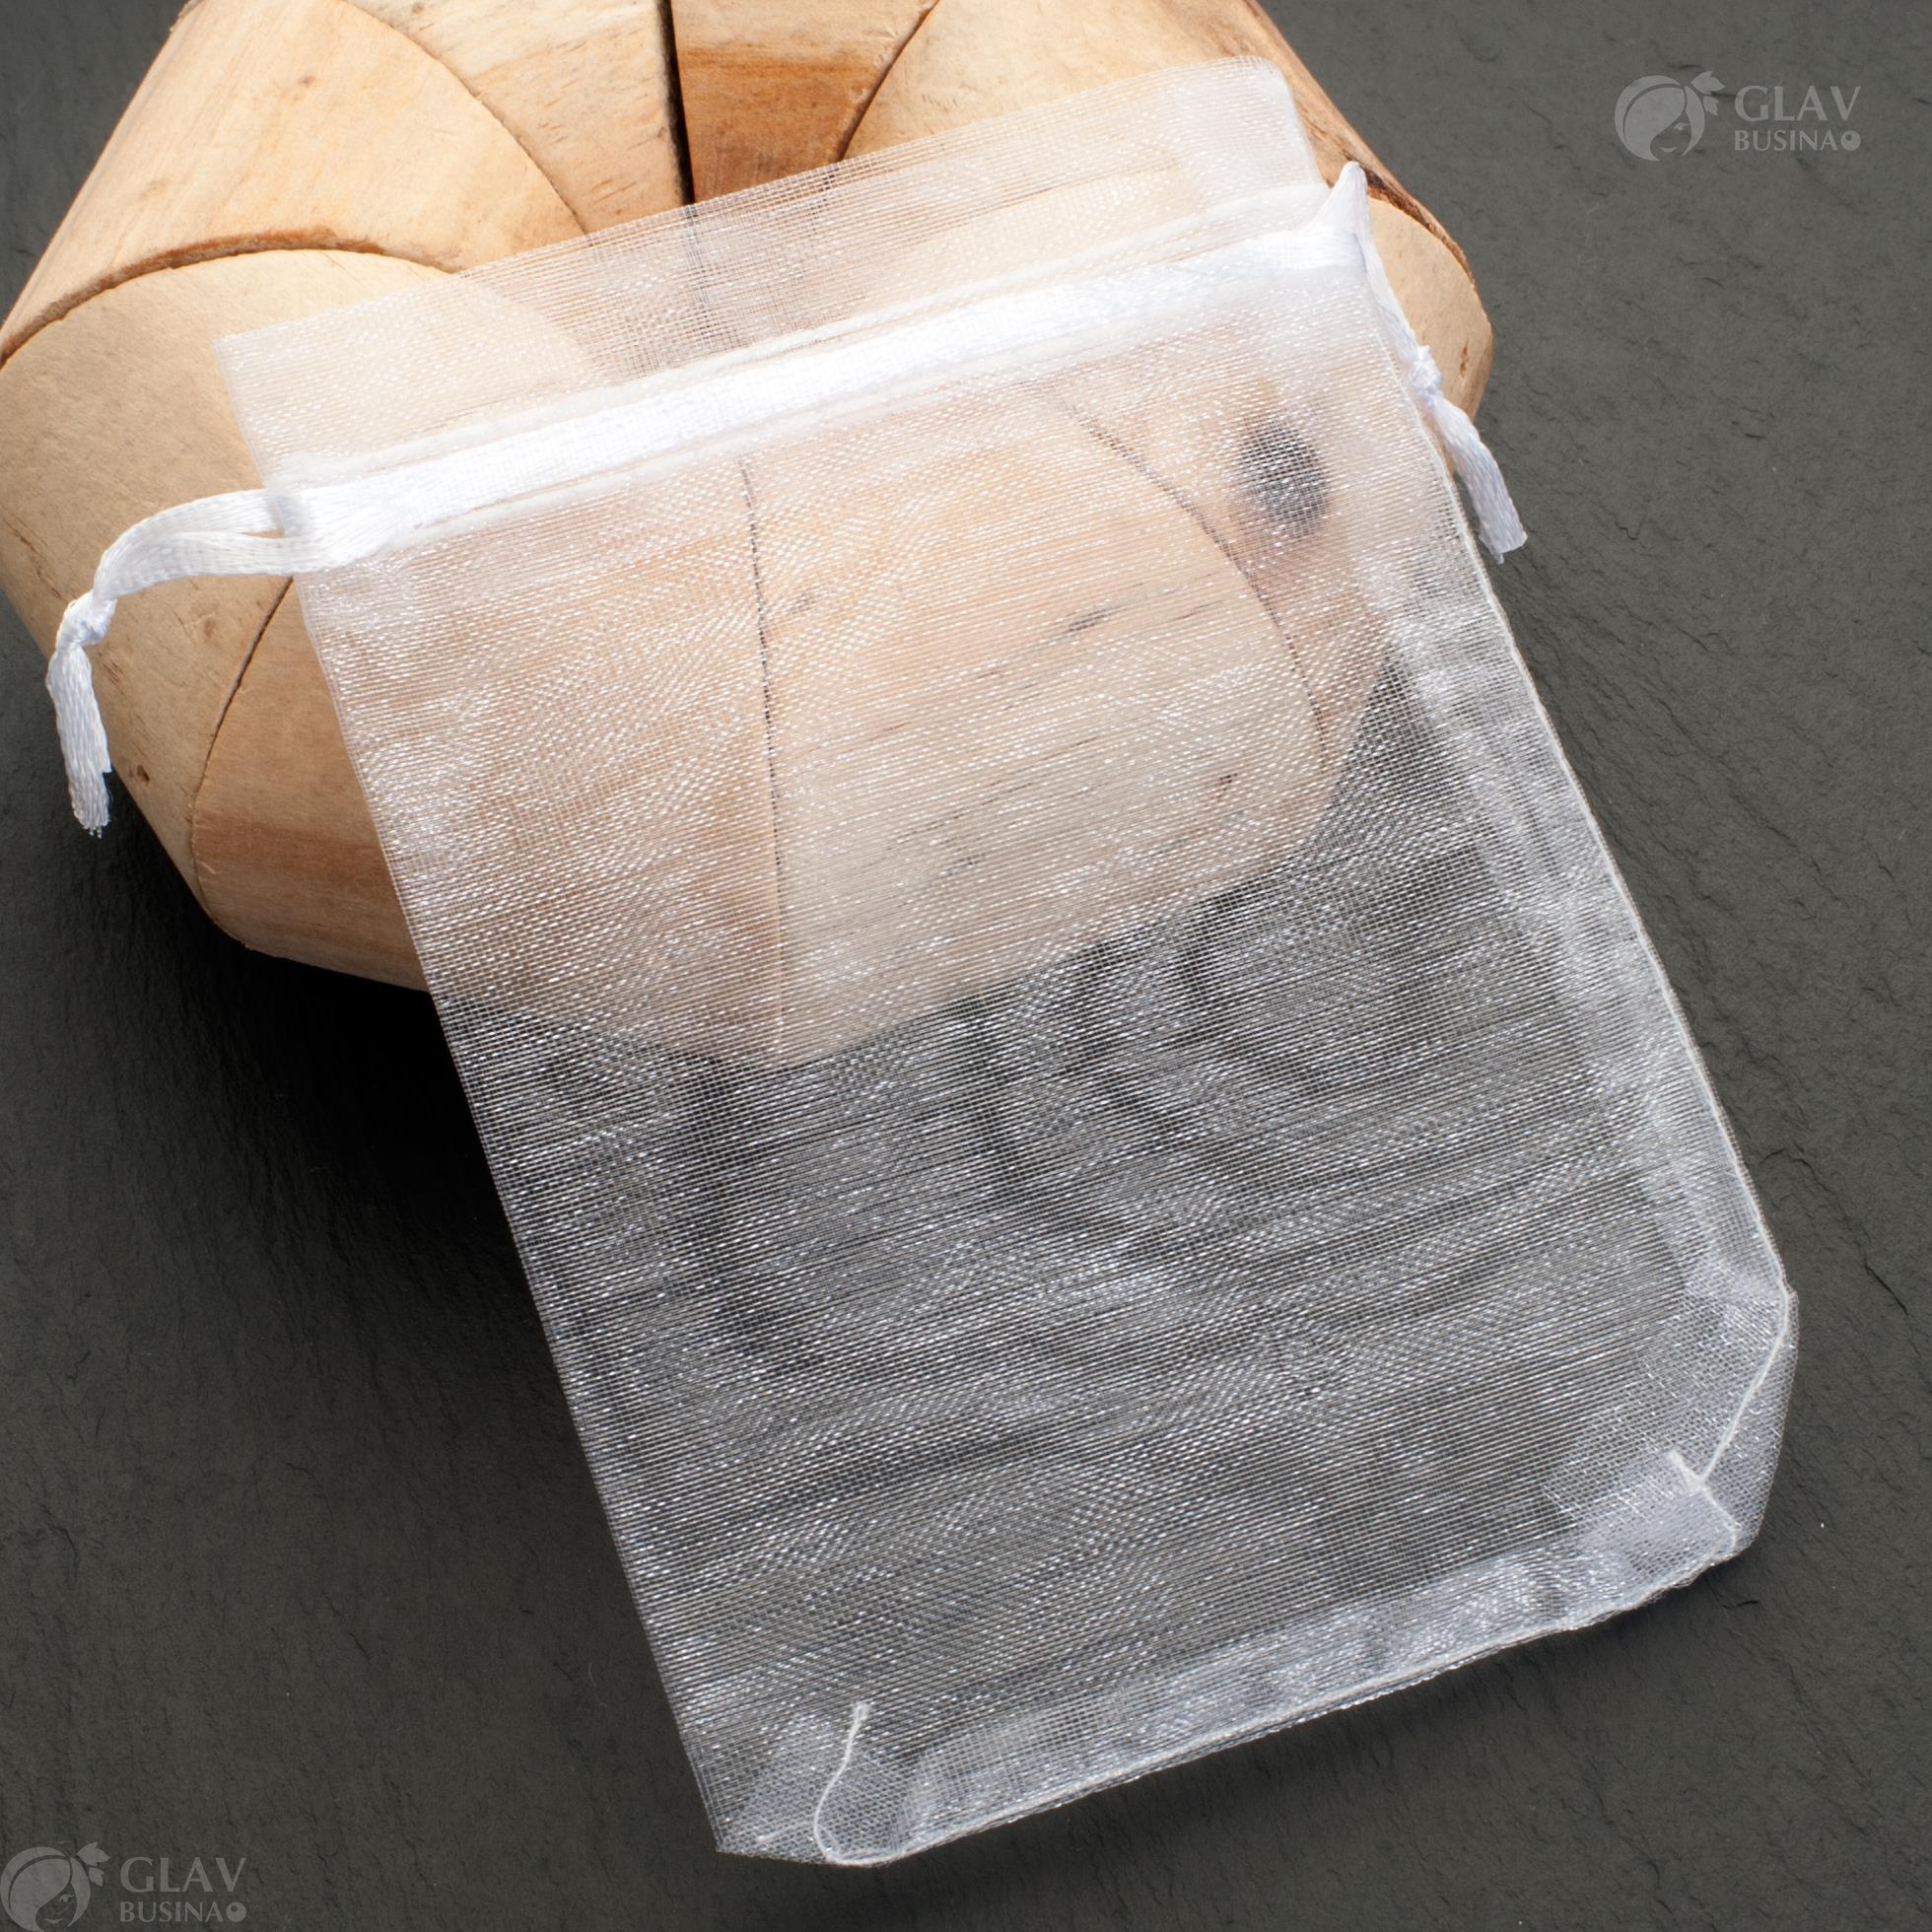 Белые мешочки из органзы с элегантной ленточкой для завязывания, размер 9х12 см, идеальны для упаковки подарков и украшений.